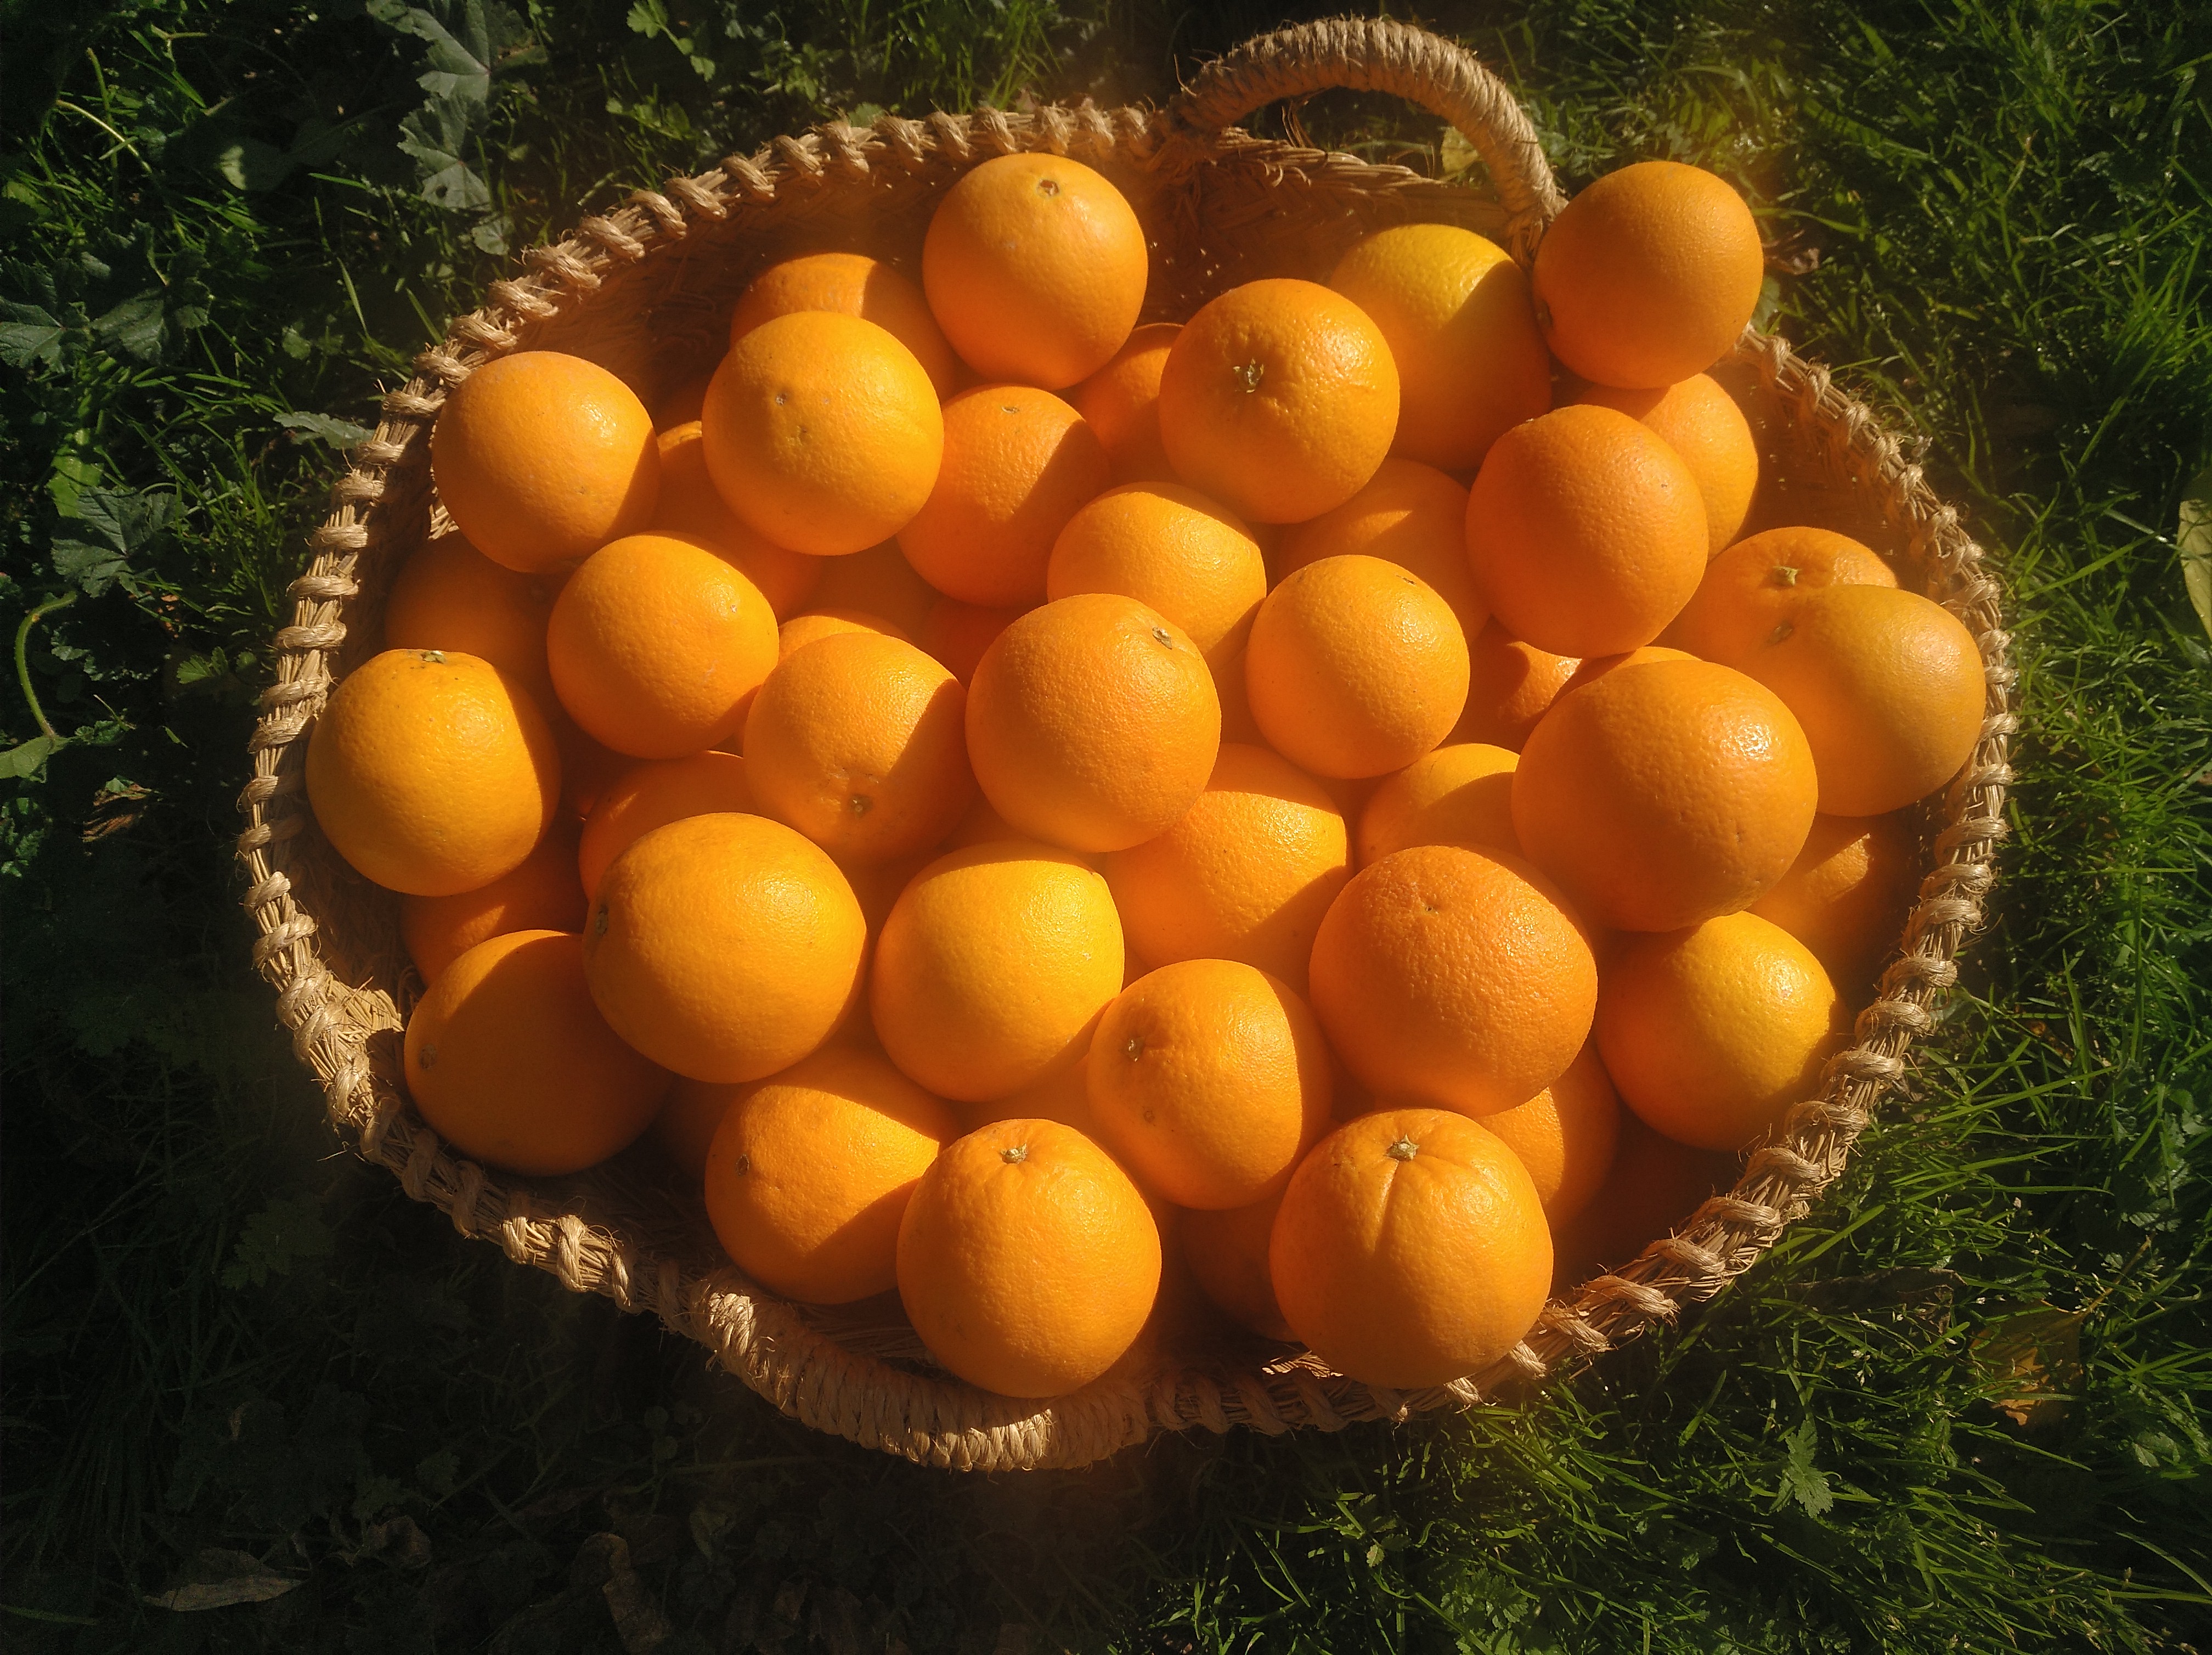 Naranjas navelinas valencianas, para zumo (15 KG)